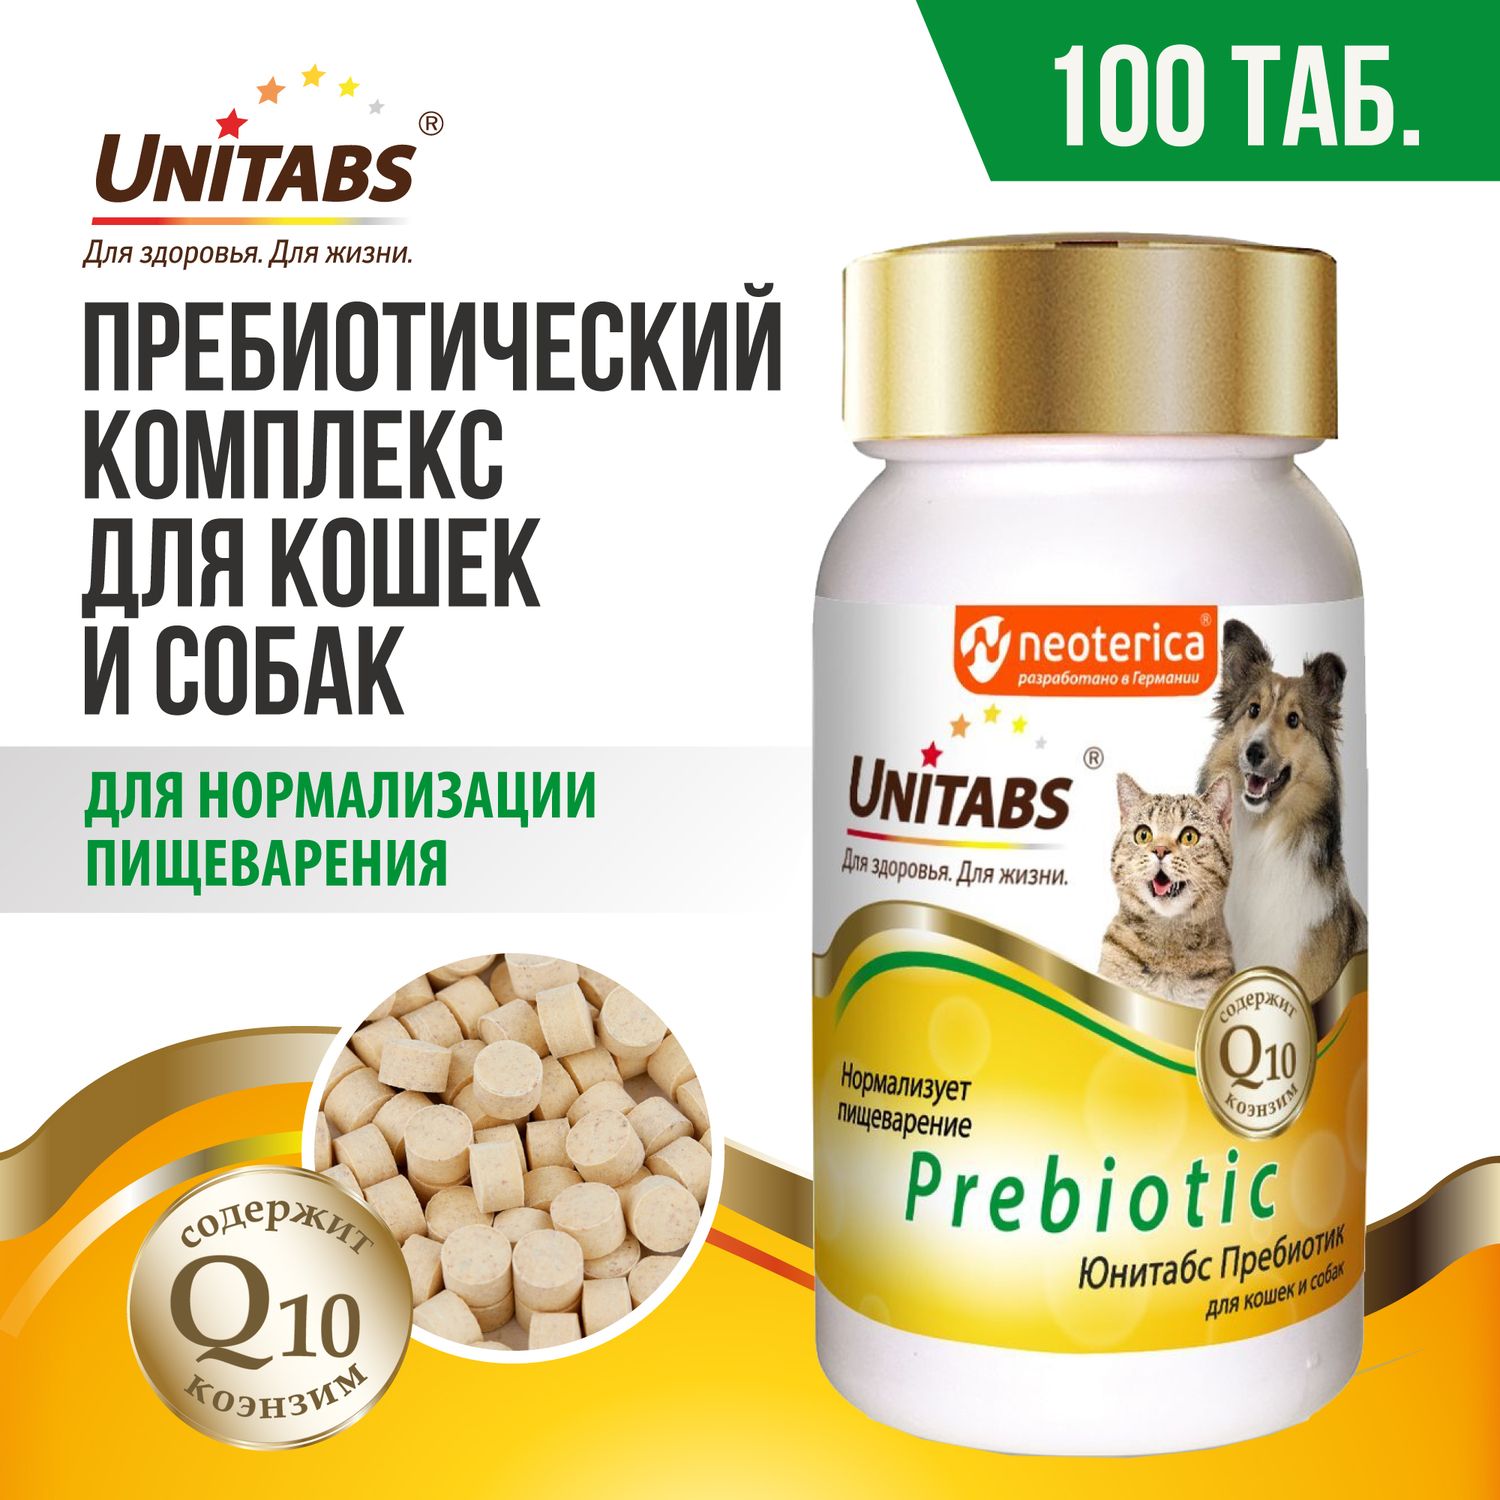 unitabs prebiotic